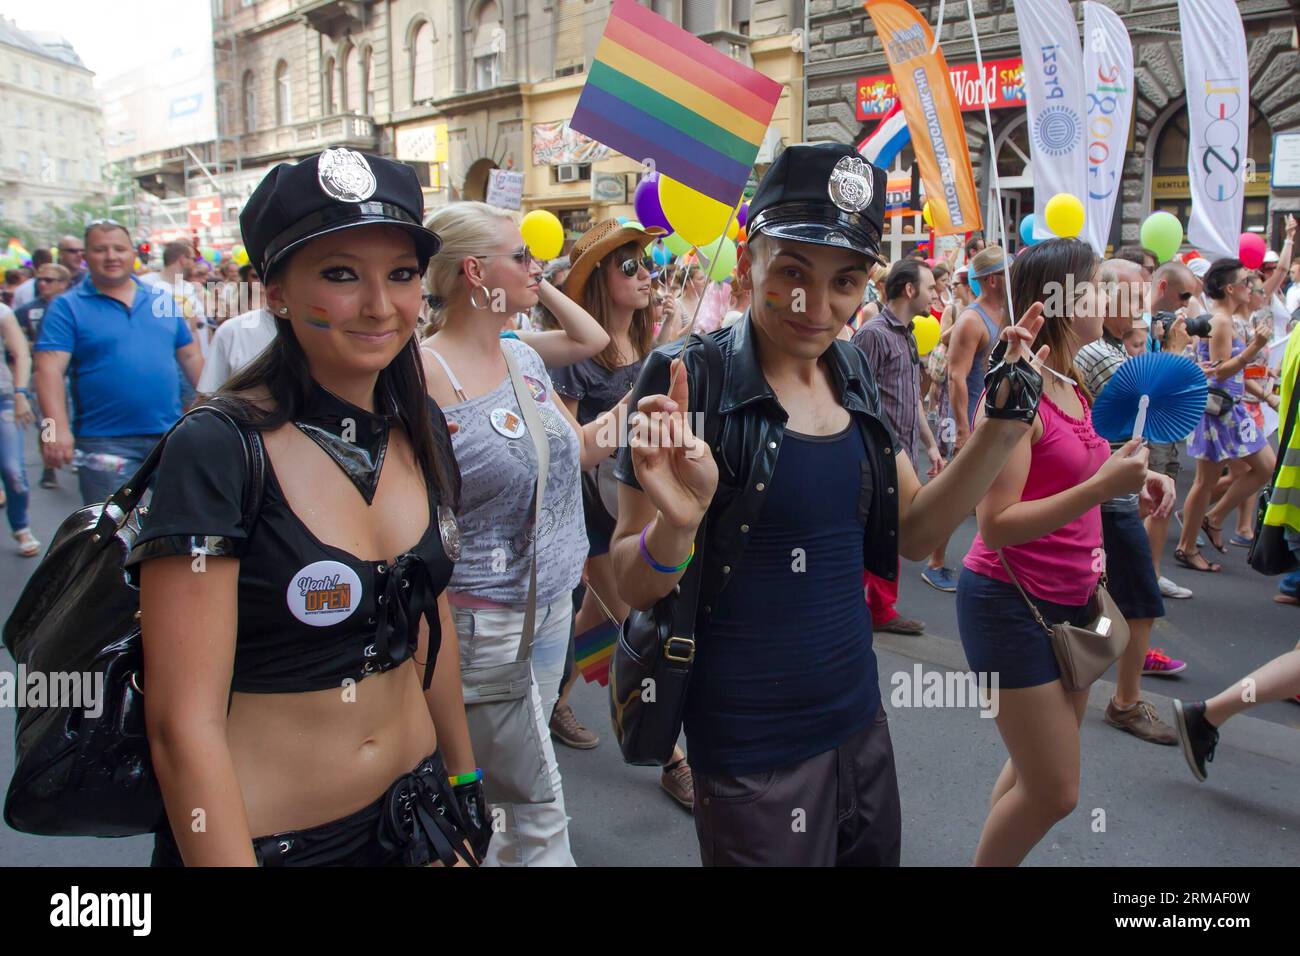 (140706) -- BUDAPEST, 5 juillet 2014 (Xinhua) -- les participants à la marche de la gay Pride à travers la ville de Budapest, Hongrie, le 5 juillet 2014. Le thème de la parade était Budapest Pride : 365 , ce qui signifie que les participants s'efforçaient d'être acceptés tout au long de l'année, et pas seulement ce jour-là. Divers groupes prétendant représenter les valeurs familiales ont organisé des contre-manifestations le long du parcours du défilé. La police a arrêté deux manifestants.(Xinhua/Attila Volgyi)(ctt) HONGRIE-BUDAPEST-GAY PRIDE PARADE PUBLICATIONxNOTxINxCHN Budapest juillet 5 2014 XINHUA participants à la gay Pride parade défilent à travers la ville Banque D'Images